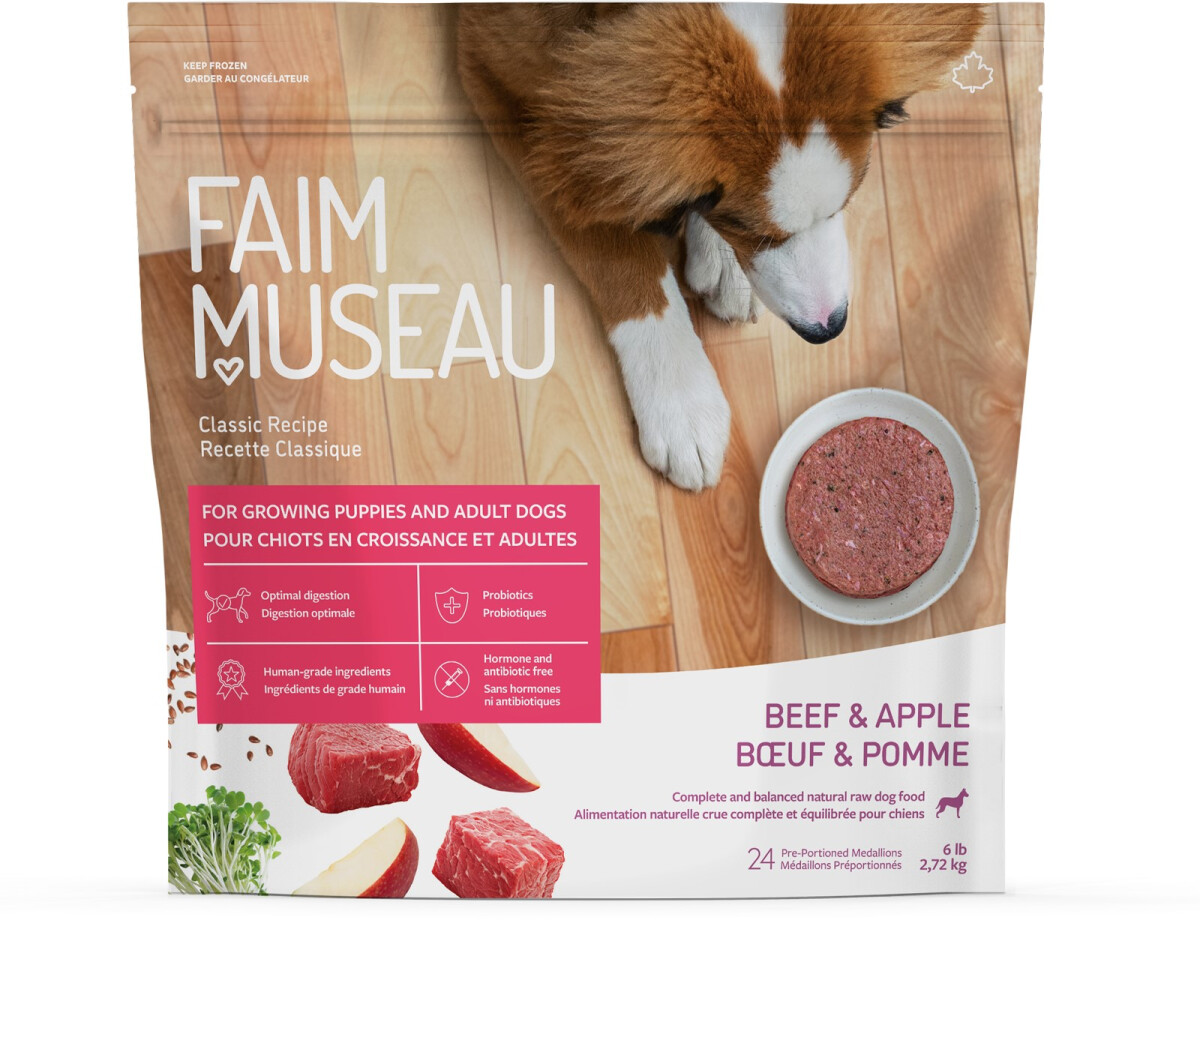 Fm108 - Nourriture crue recette classique boeuf & pomme pour chiens - Faim Museau